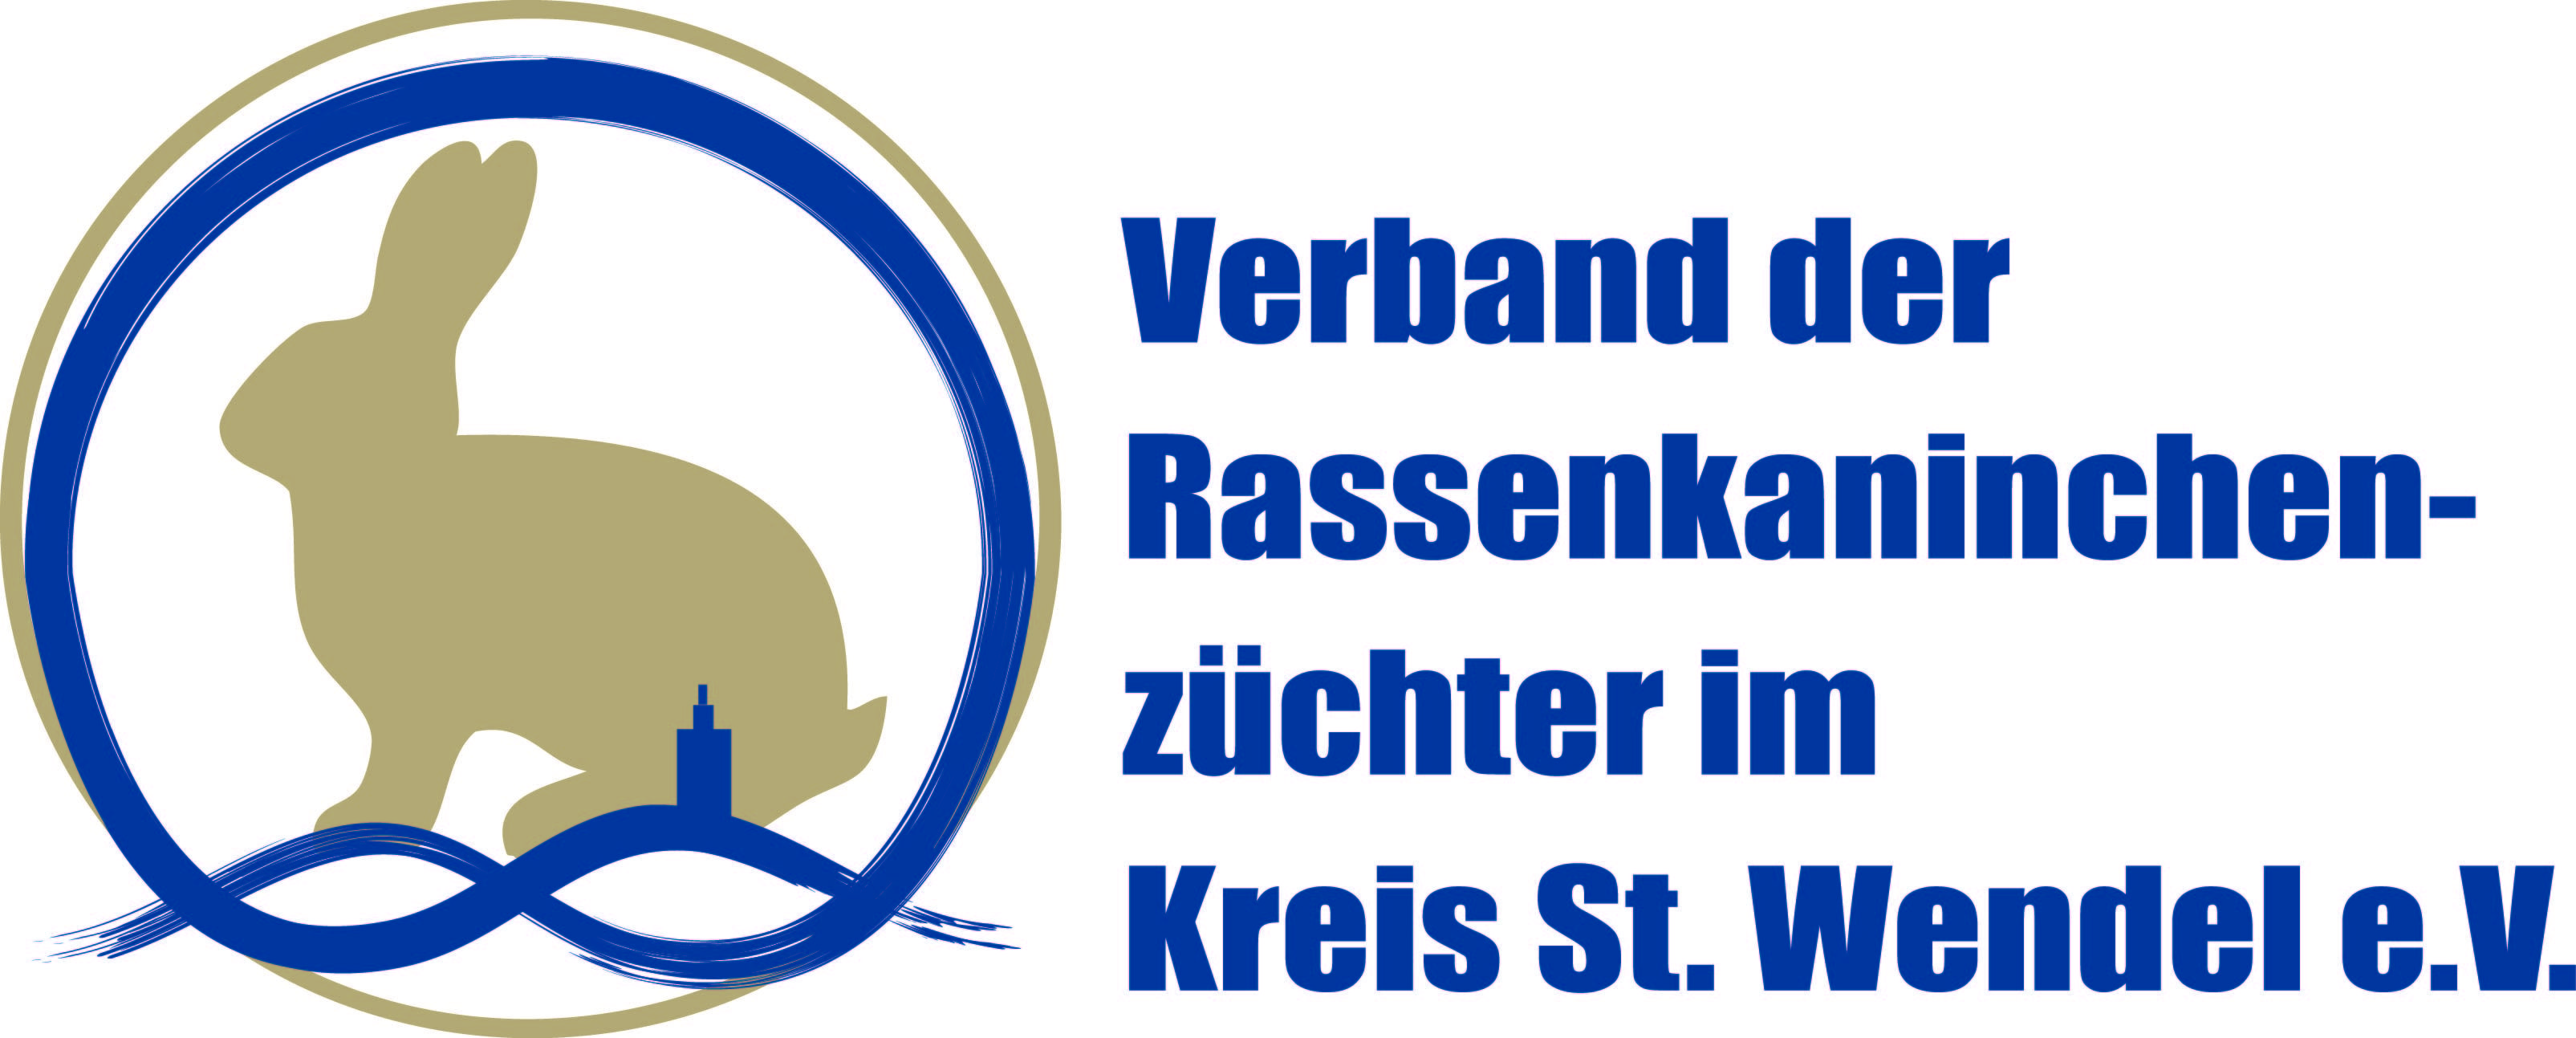 Profilbild des Vereins 'Verband der Rassekaninchenzüchter im Kreis St. Wendel e.V.'